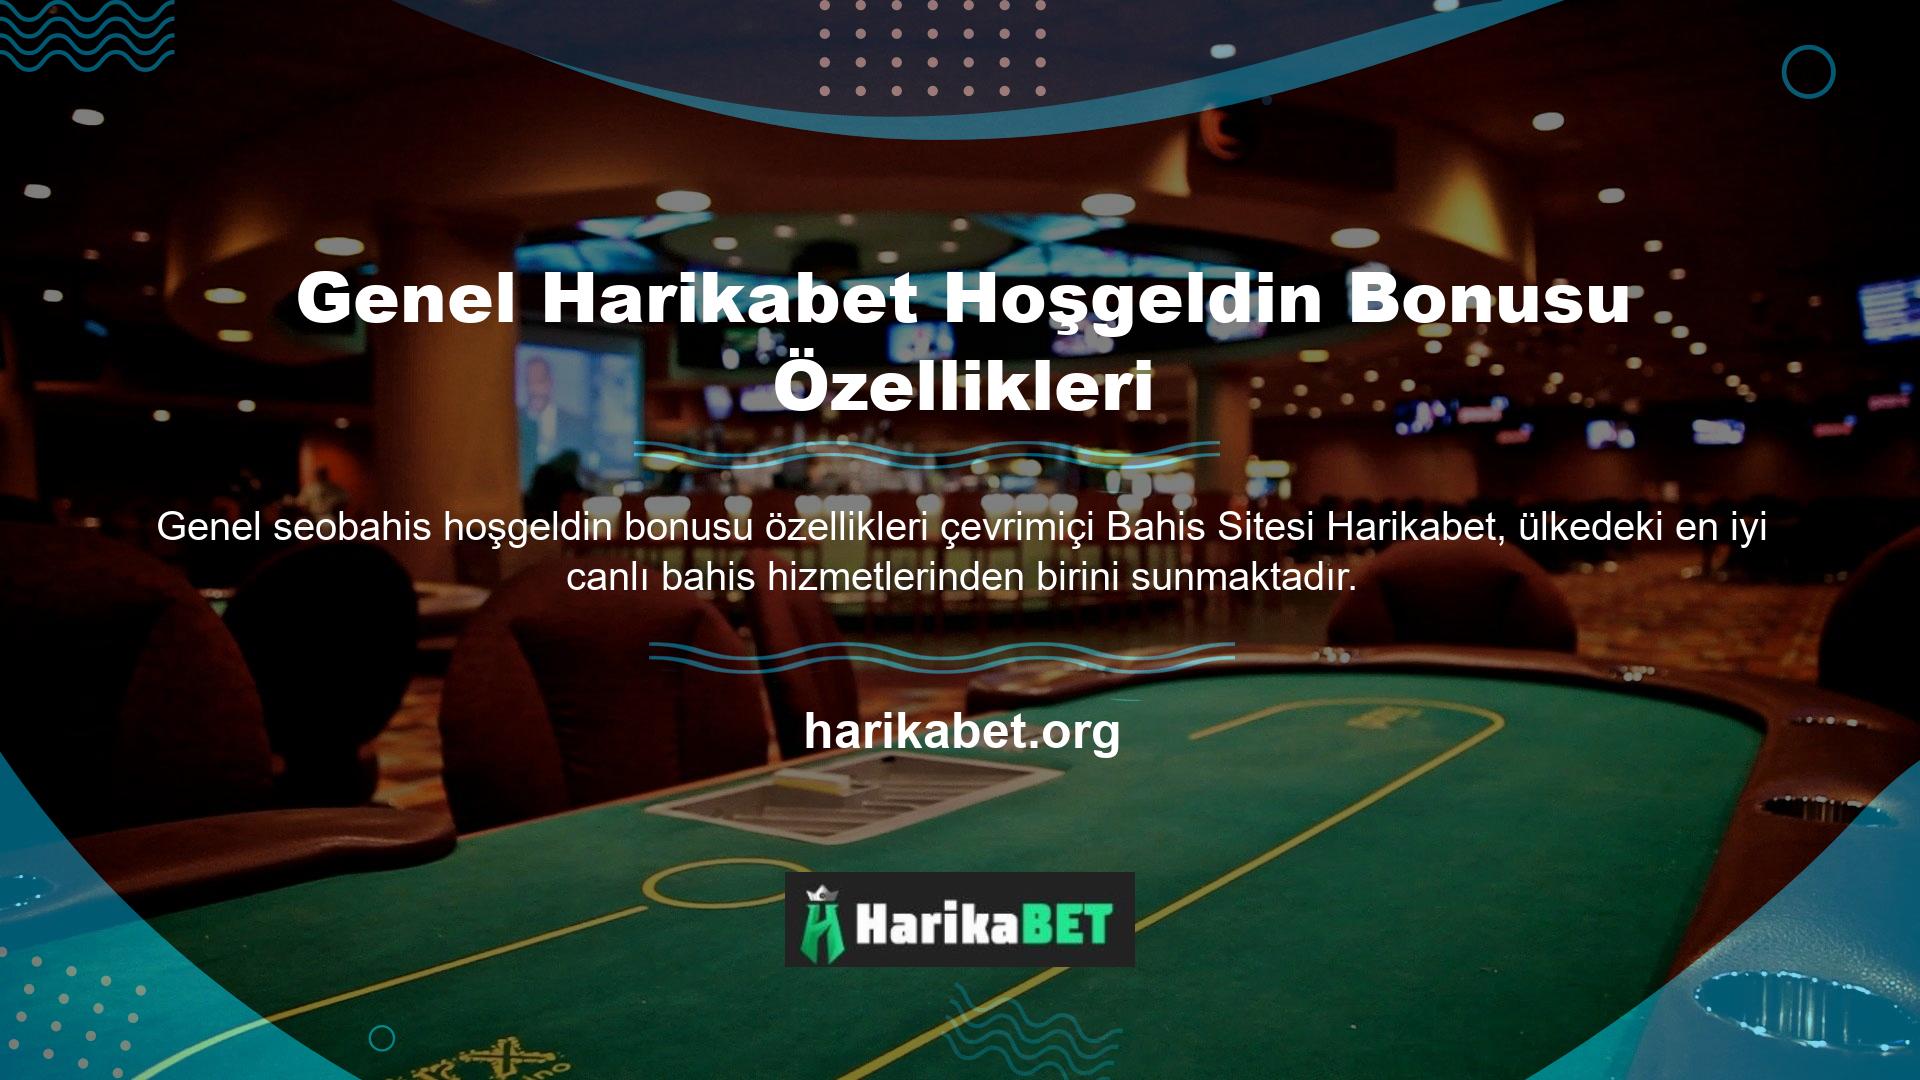 Casino siteleri kullanıcılara çok çeşitli oyunlar sunmaktadır